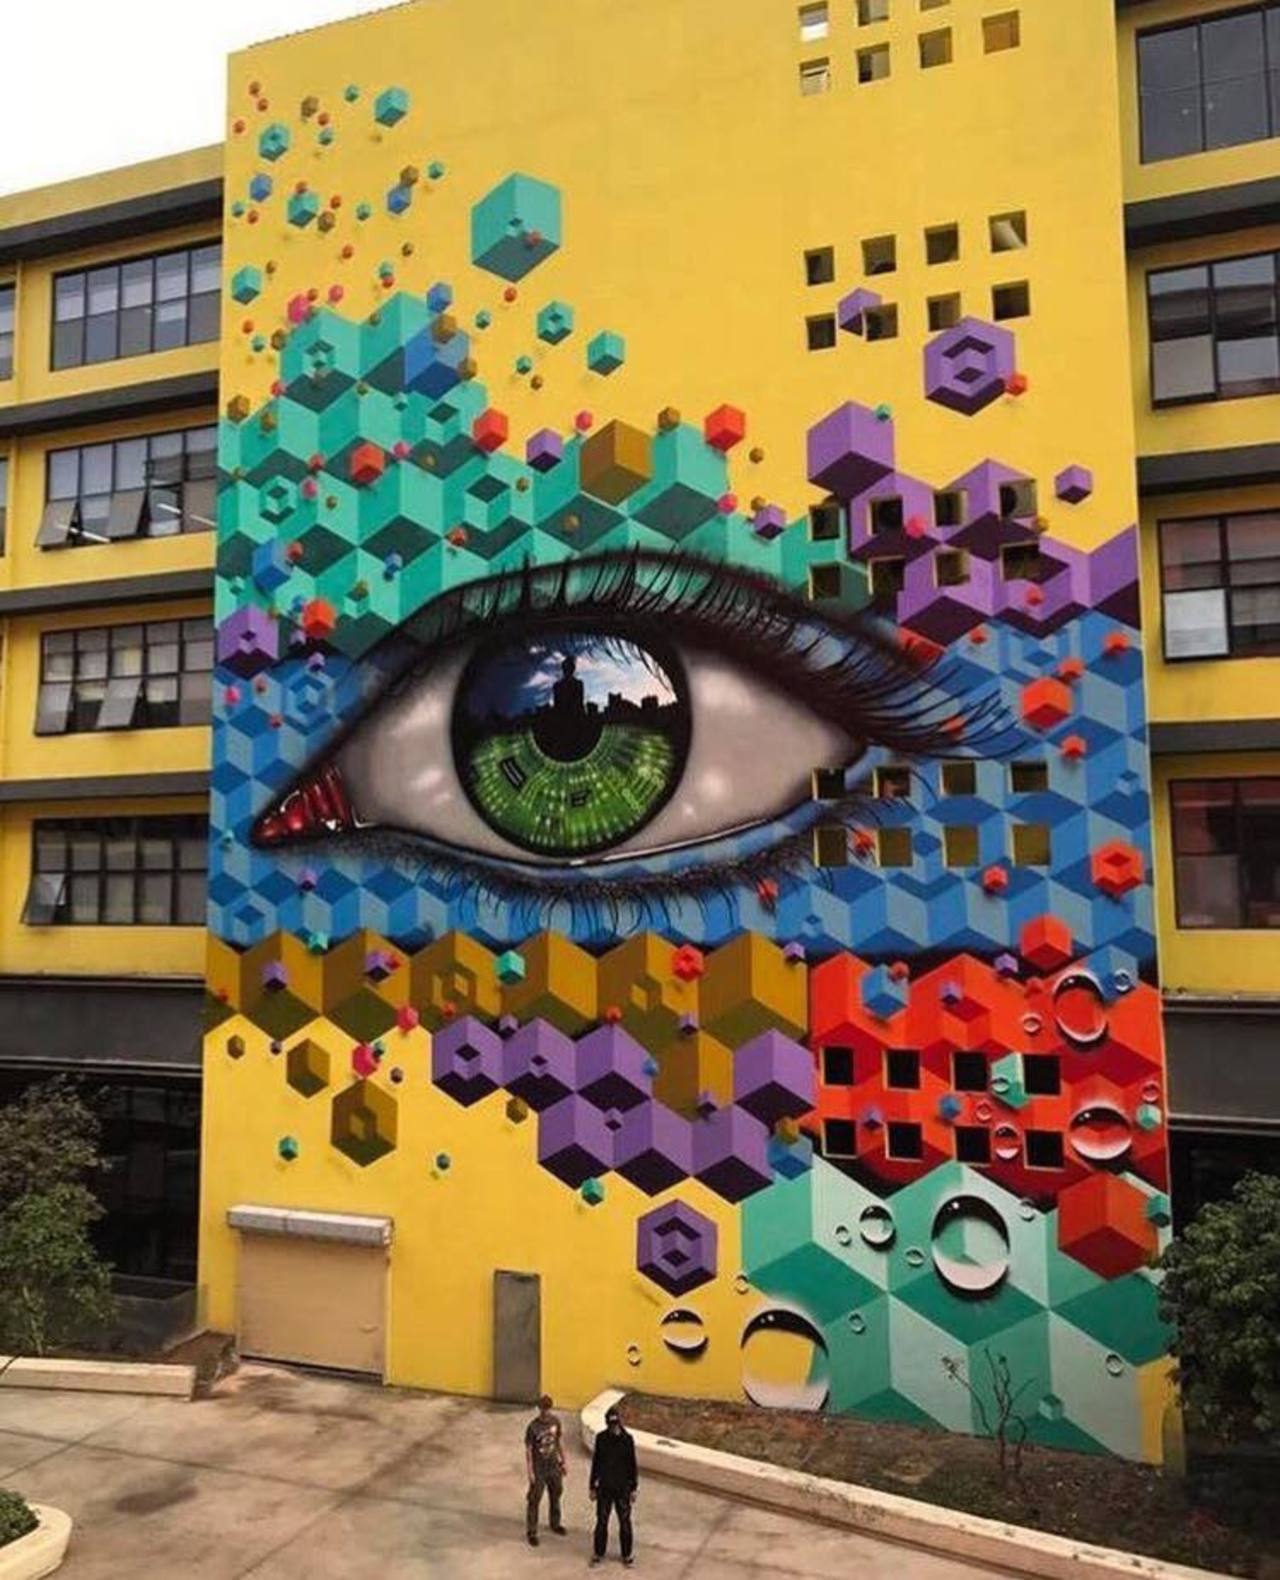 Awesome Street Art by SNUB23#art #artist #streetart #artwork #graffiti #graffitiart #muralart #eye #artistsnartlovers #LoveTwitter https://t.co/dVp67wrTEq